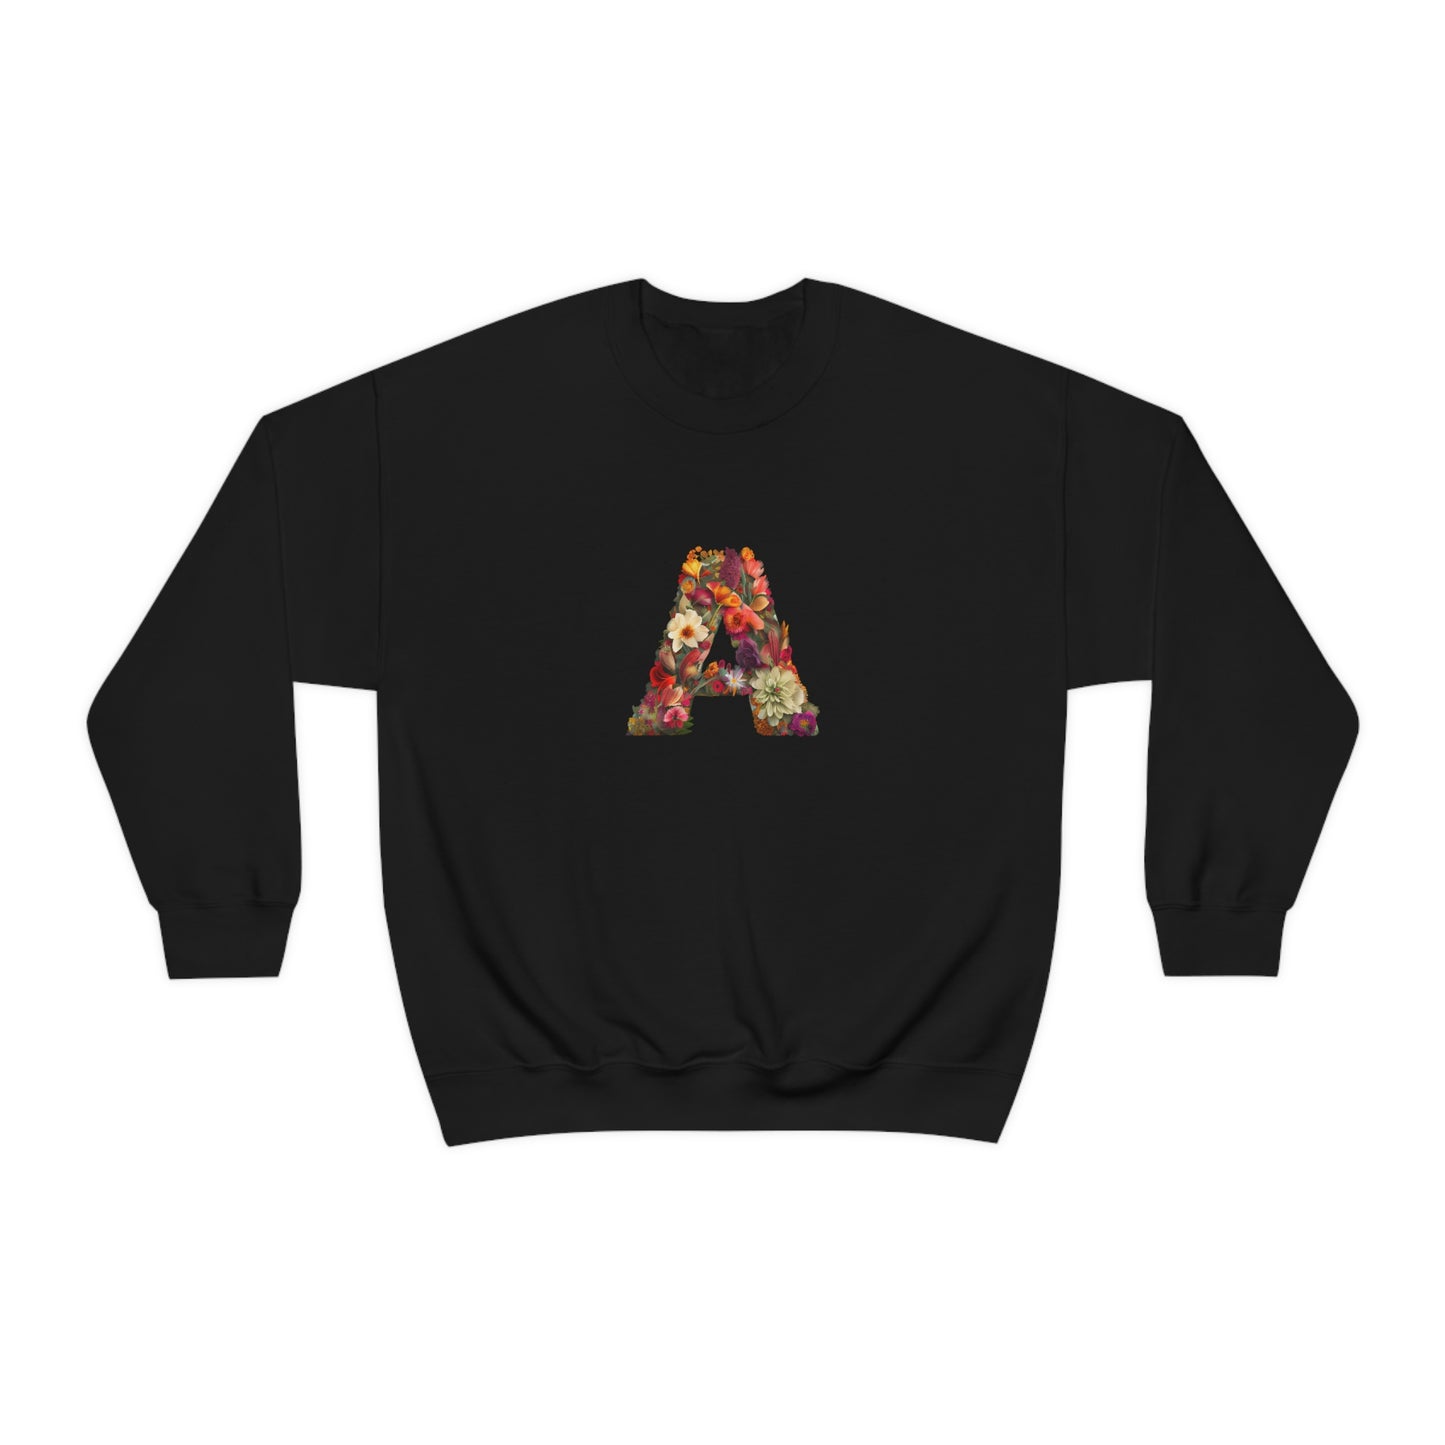 Unisex Heavy Blend™ Crewneck Sweatshirt "A"